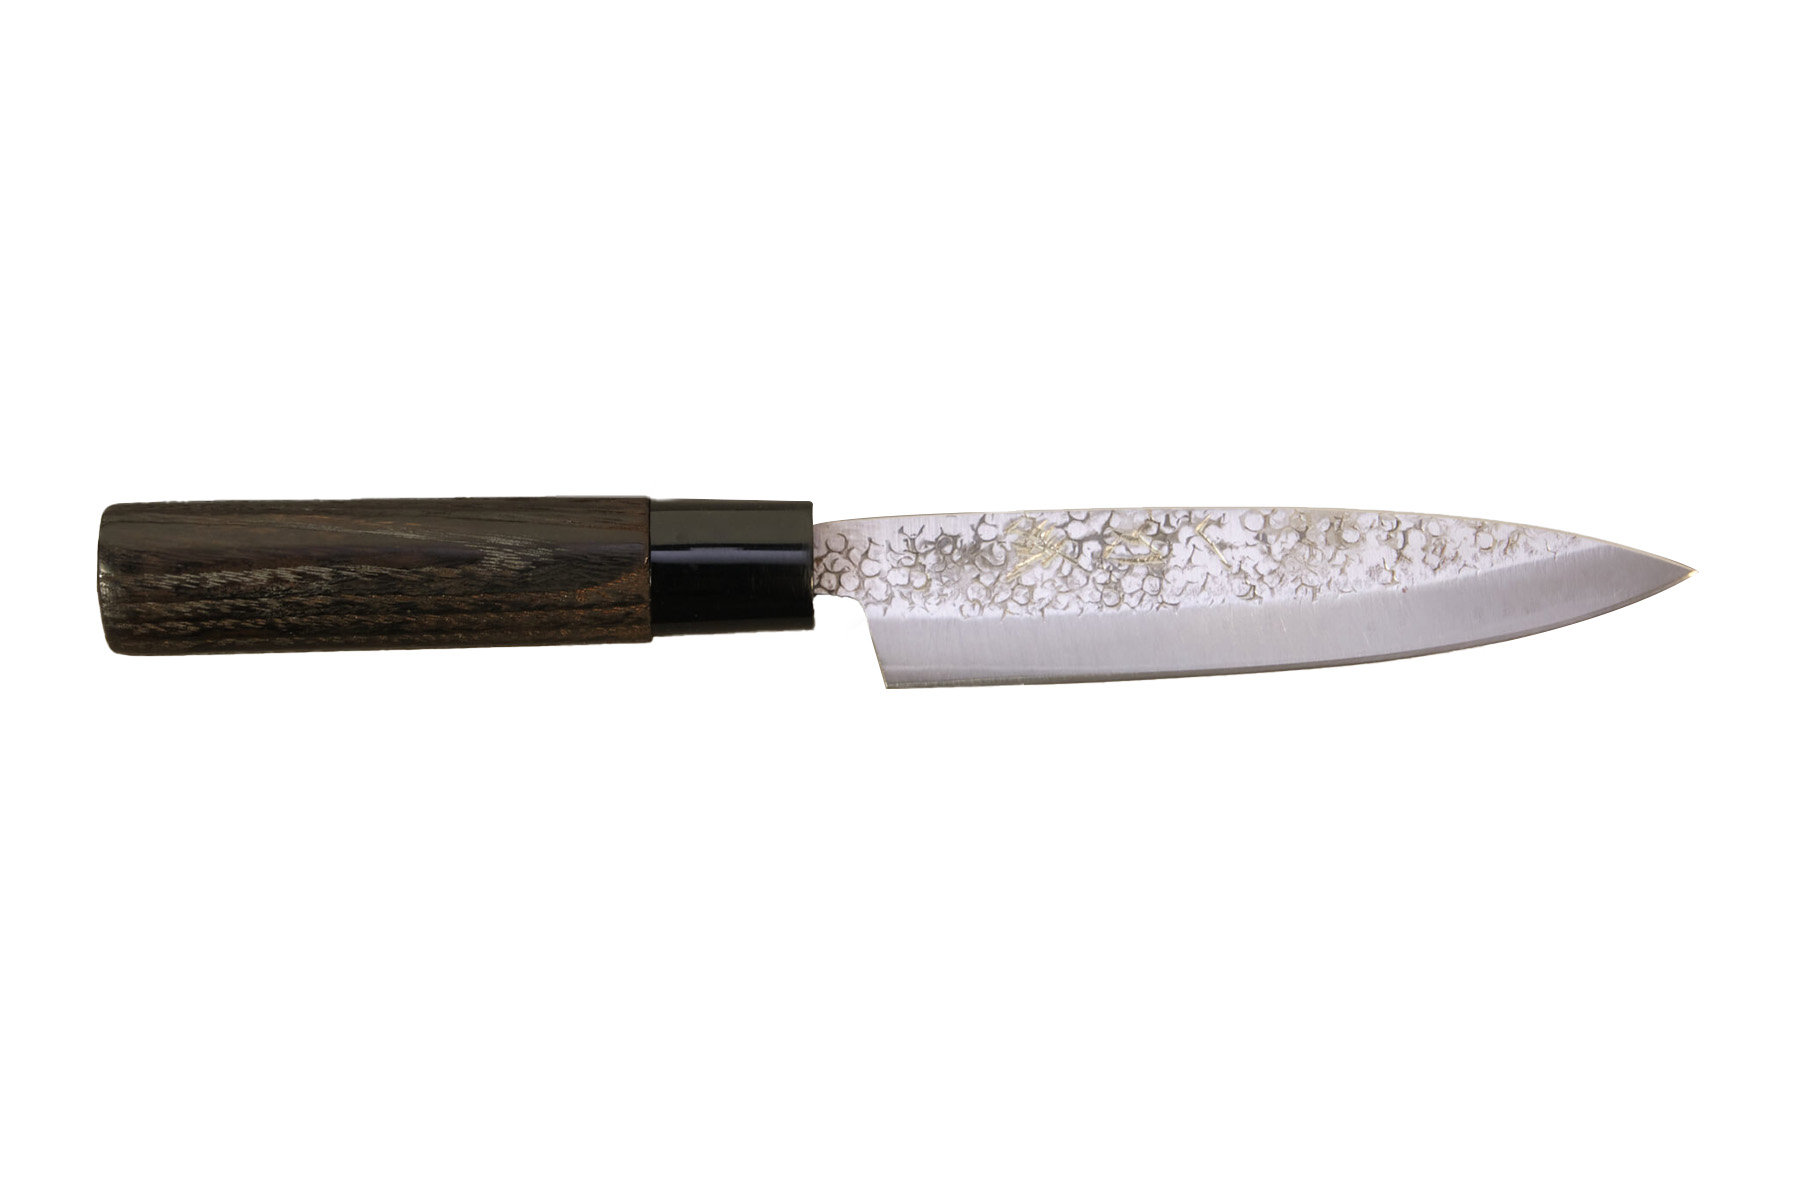 Couteau japonais Suncraft Full Tang - Couteau d'office 9 cm